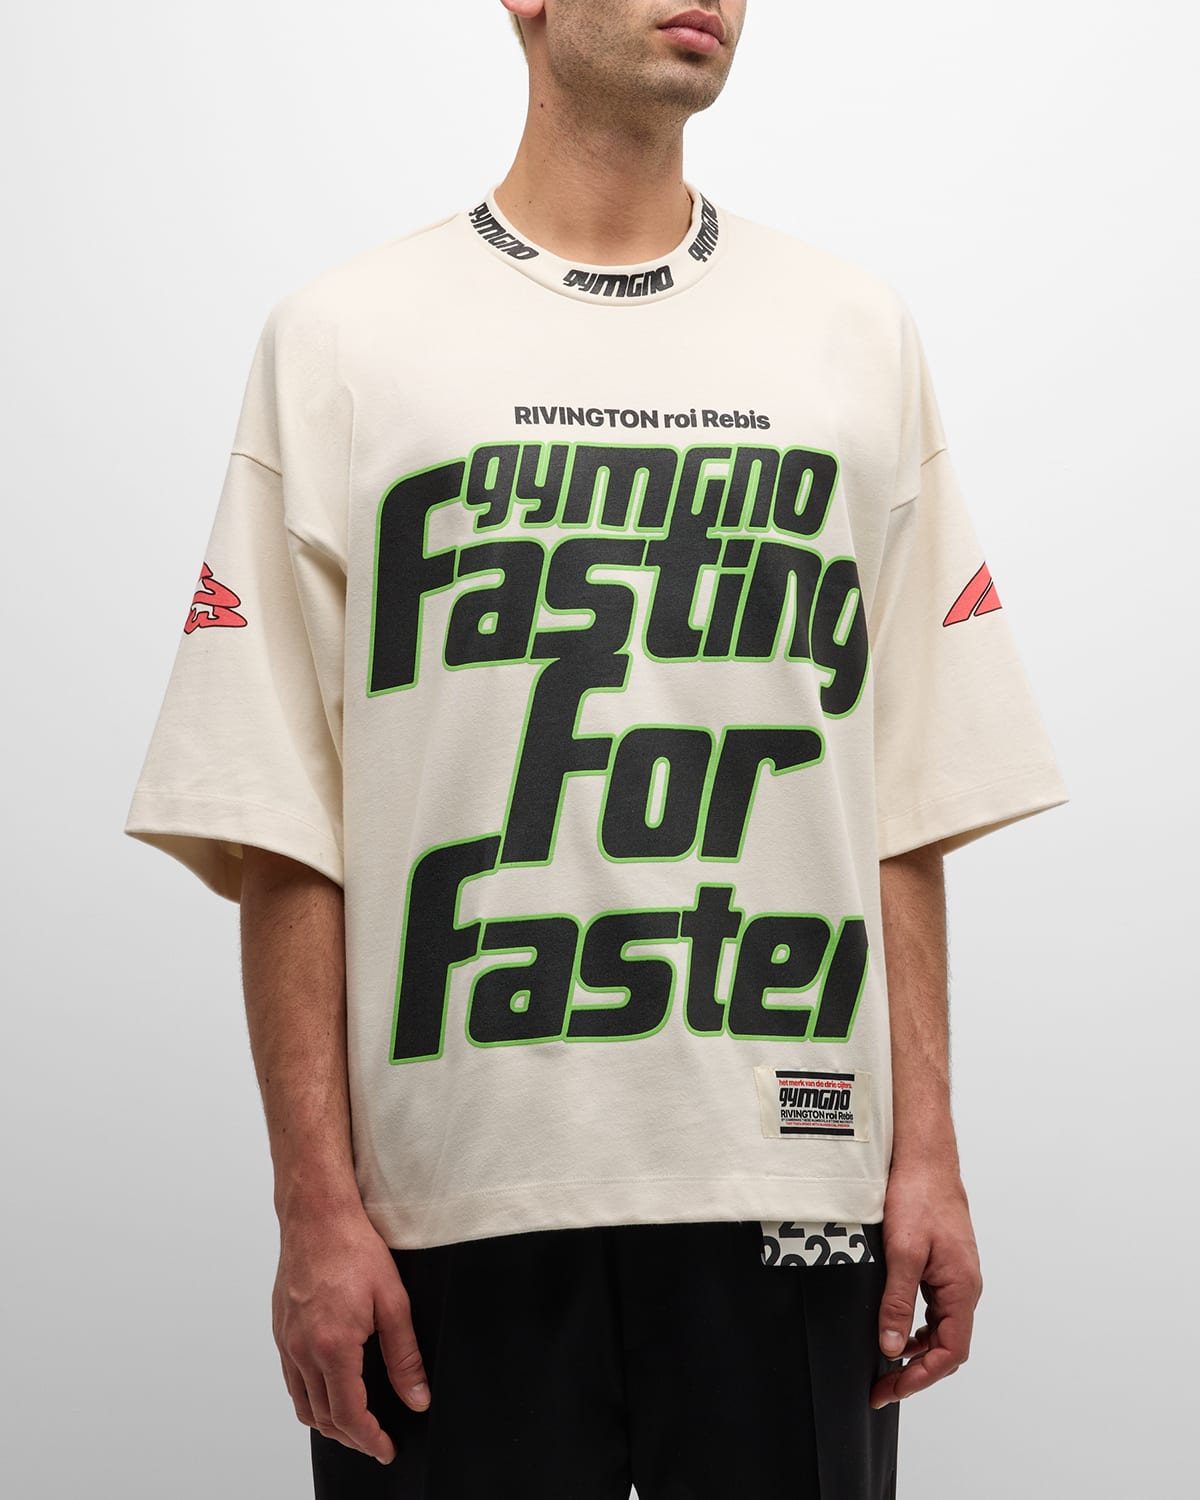 Rivington Roi Rebis Men's Fasting For Faster Short-sleeve T-shirt In White